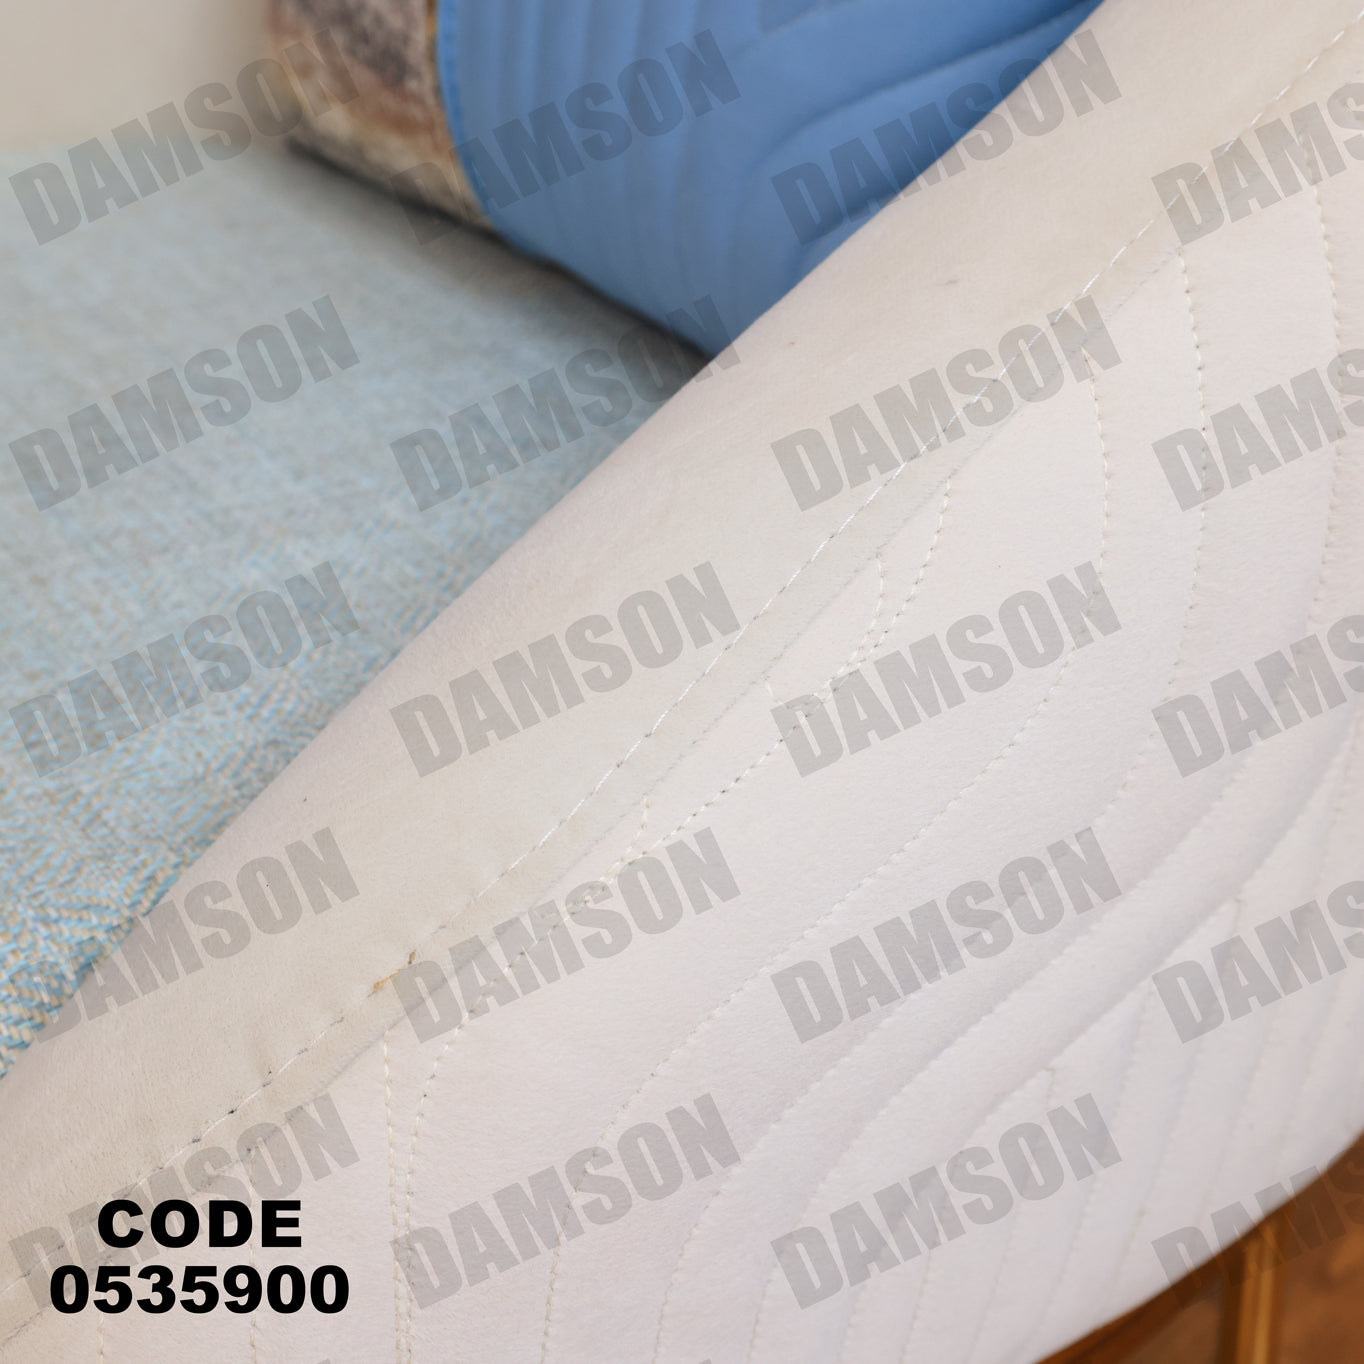 انترية 359 - Damson Furnitureانترية 359